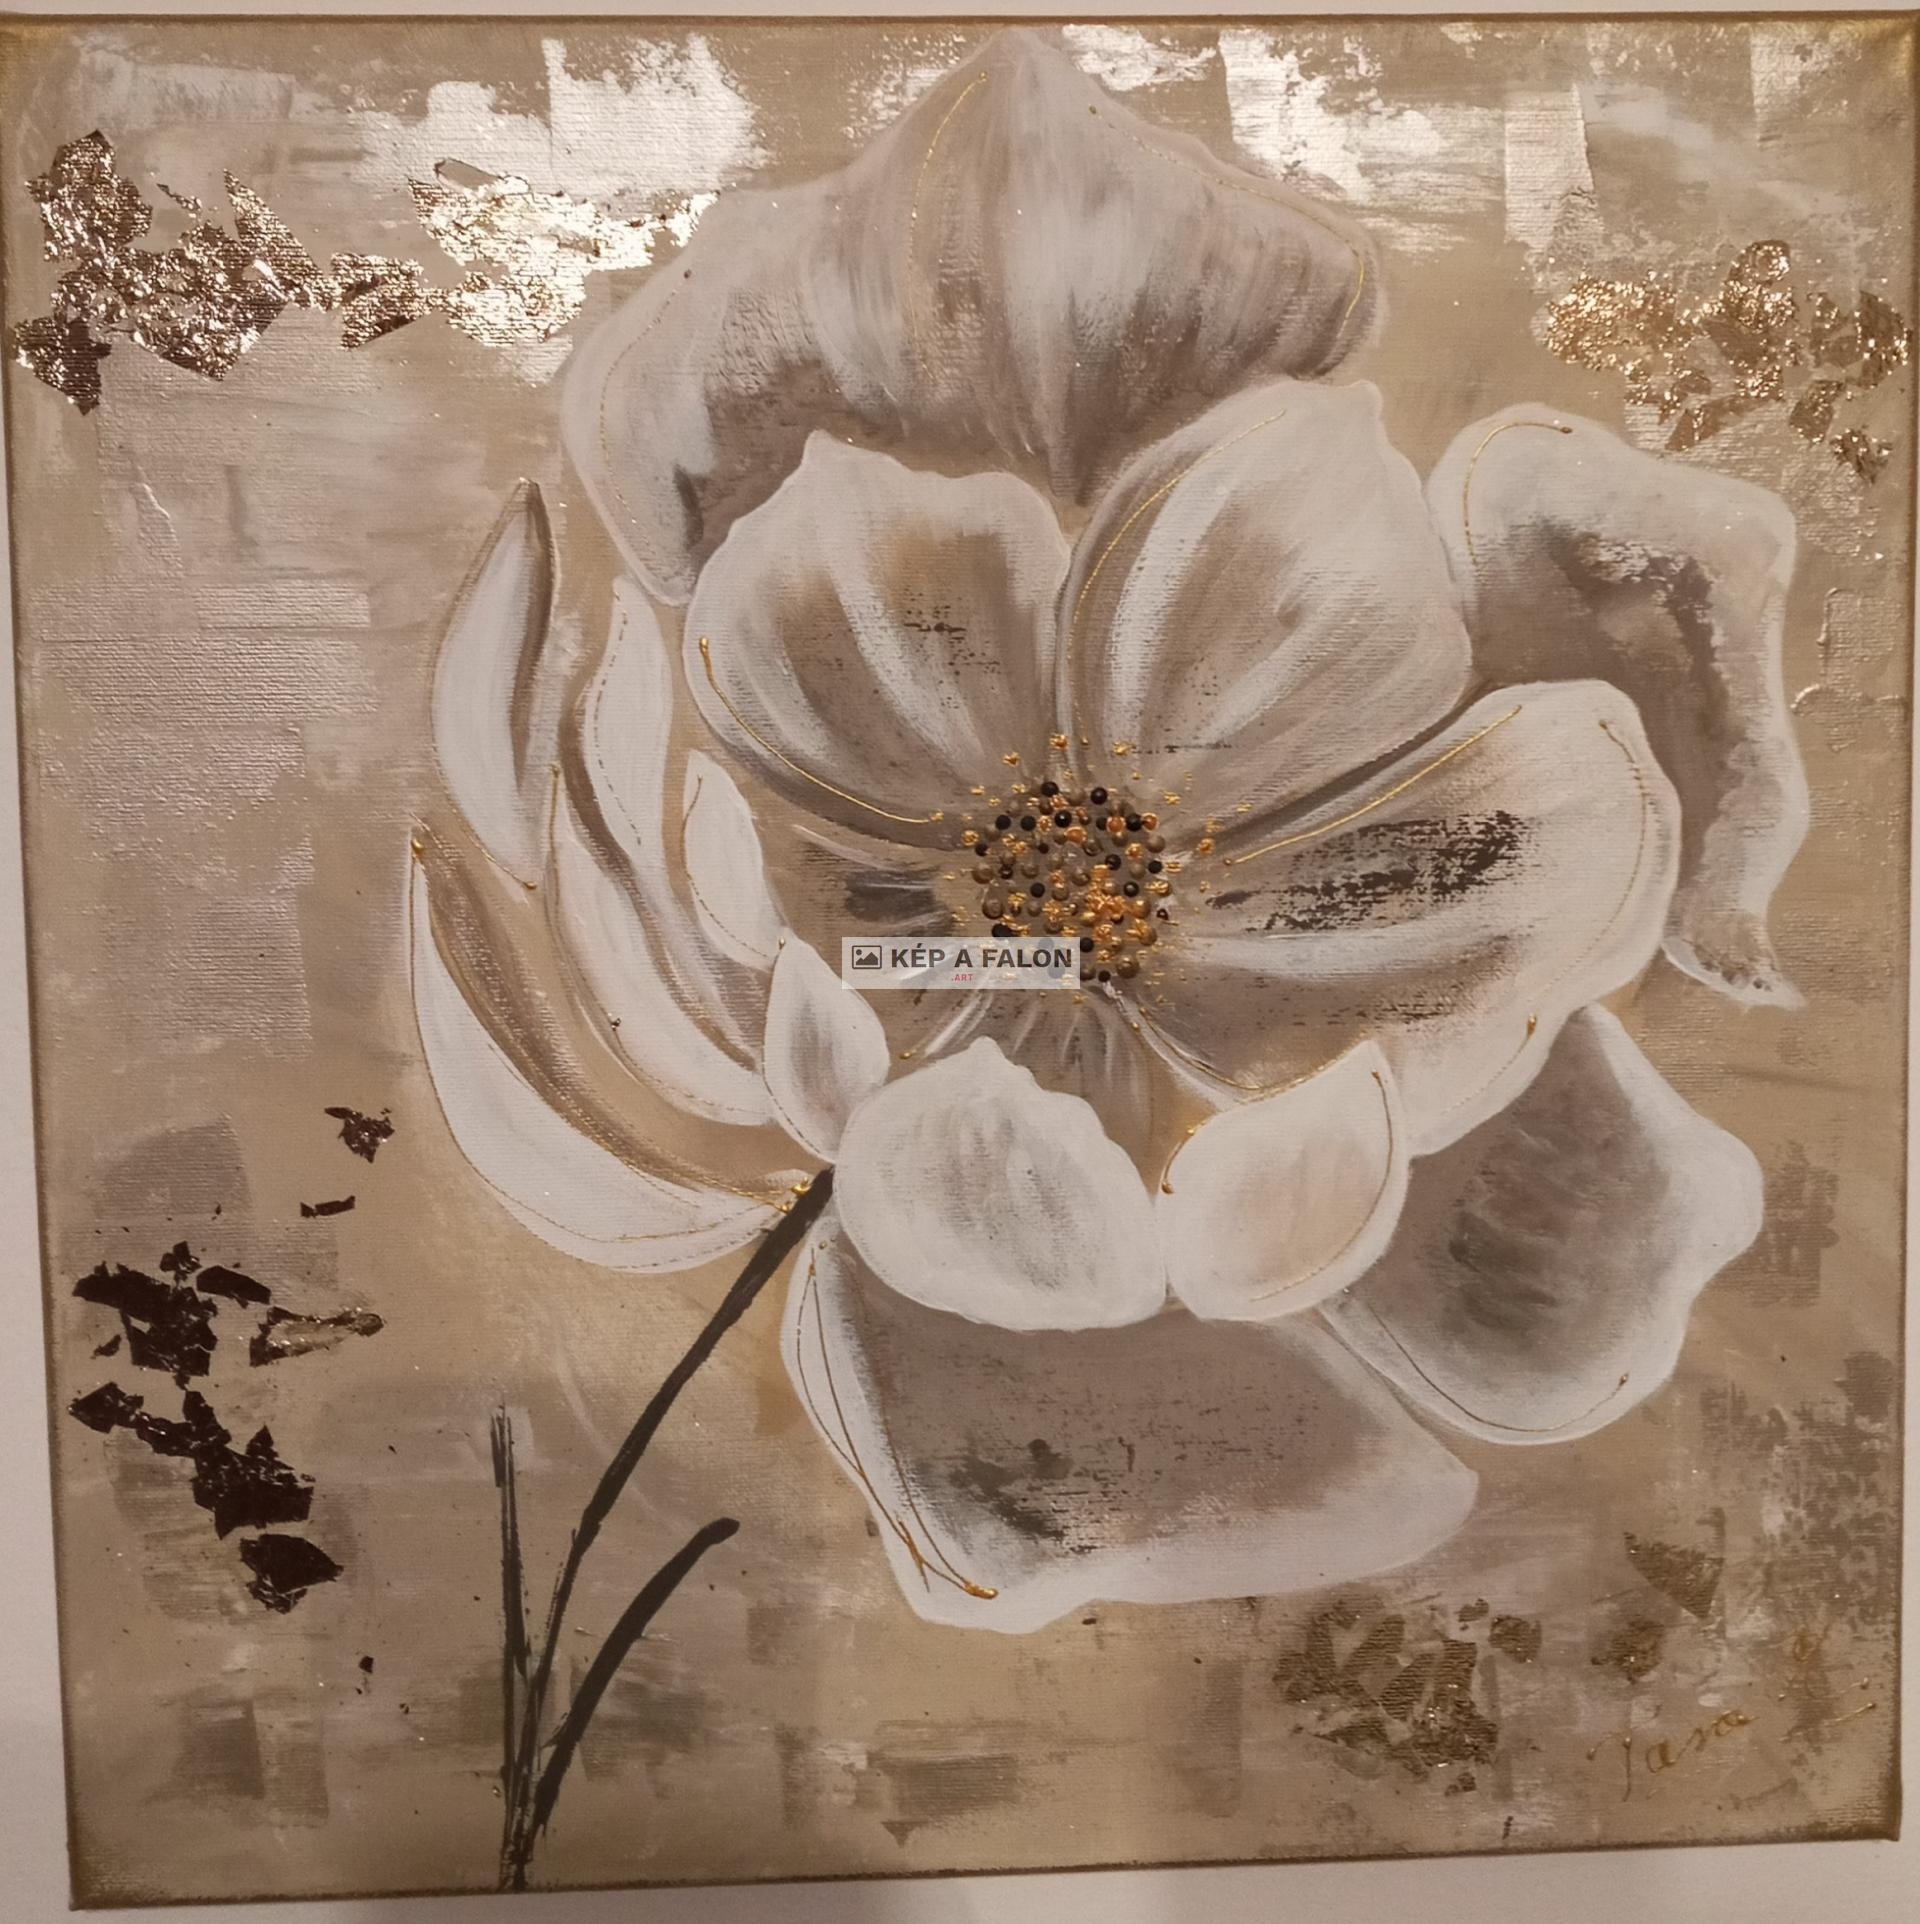 Nyíló virágszirmok  by: Tara Mónika | 2021, akril festmény